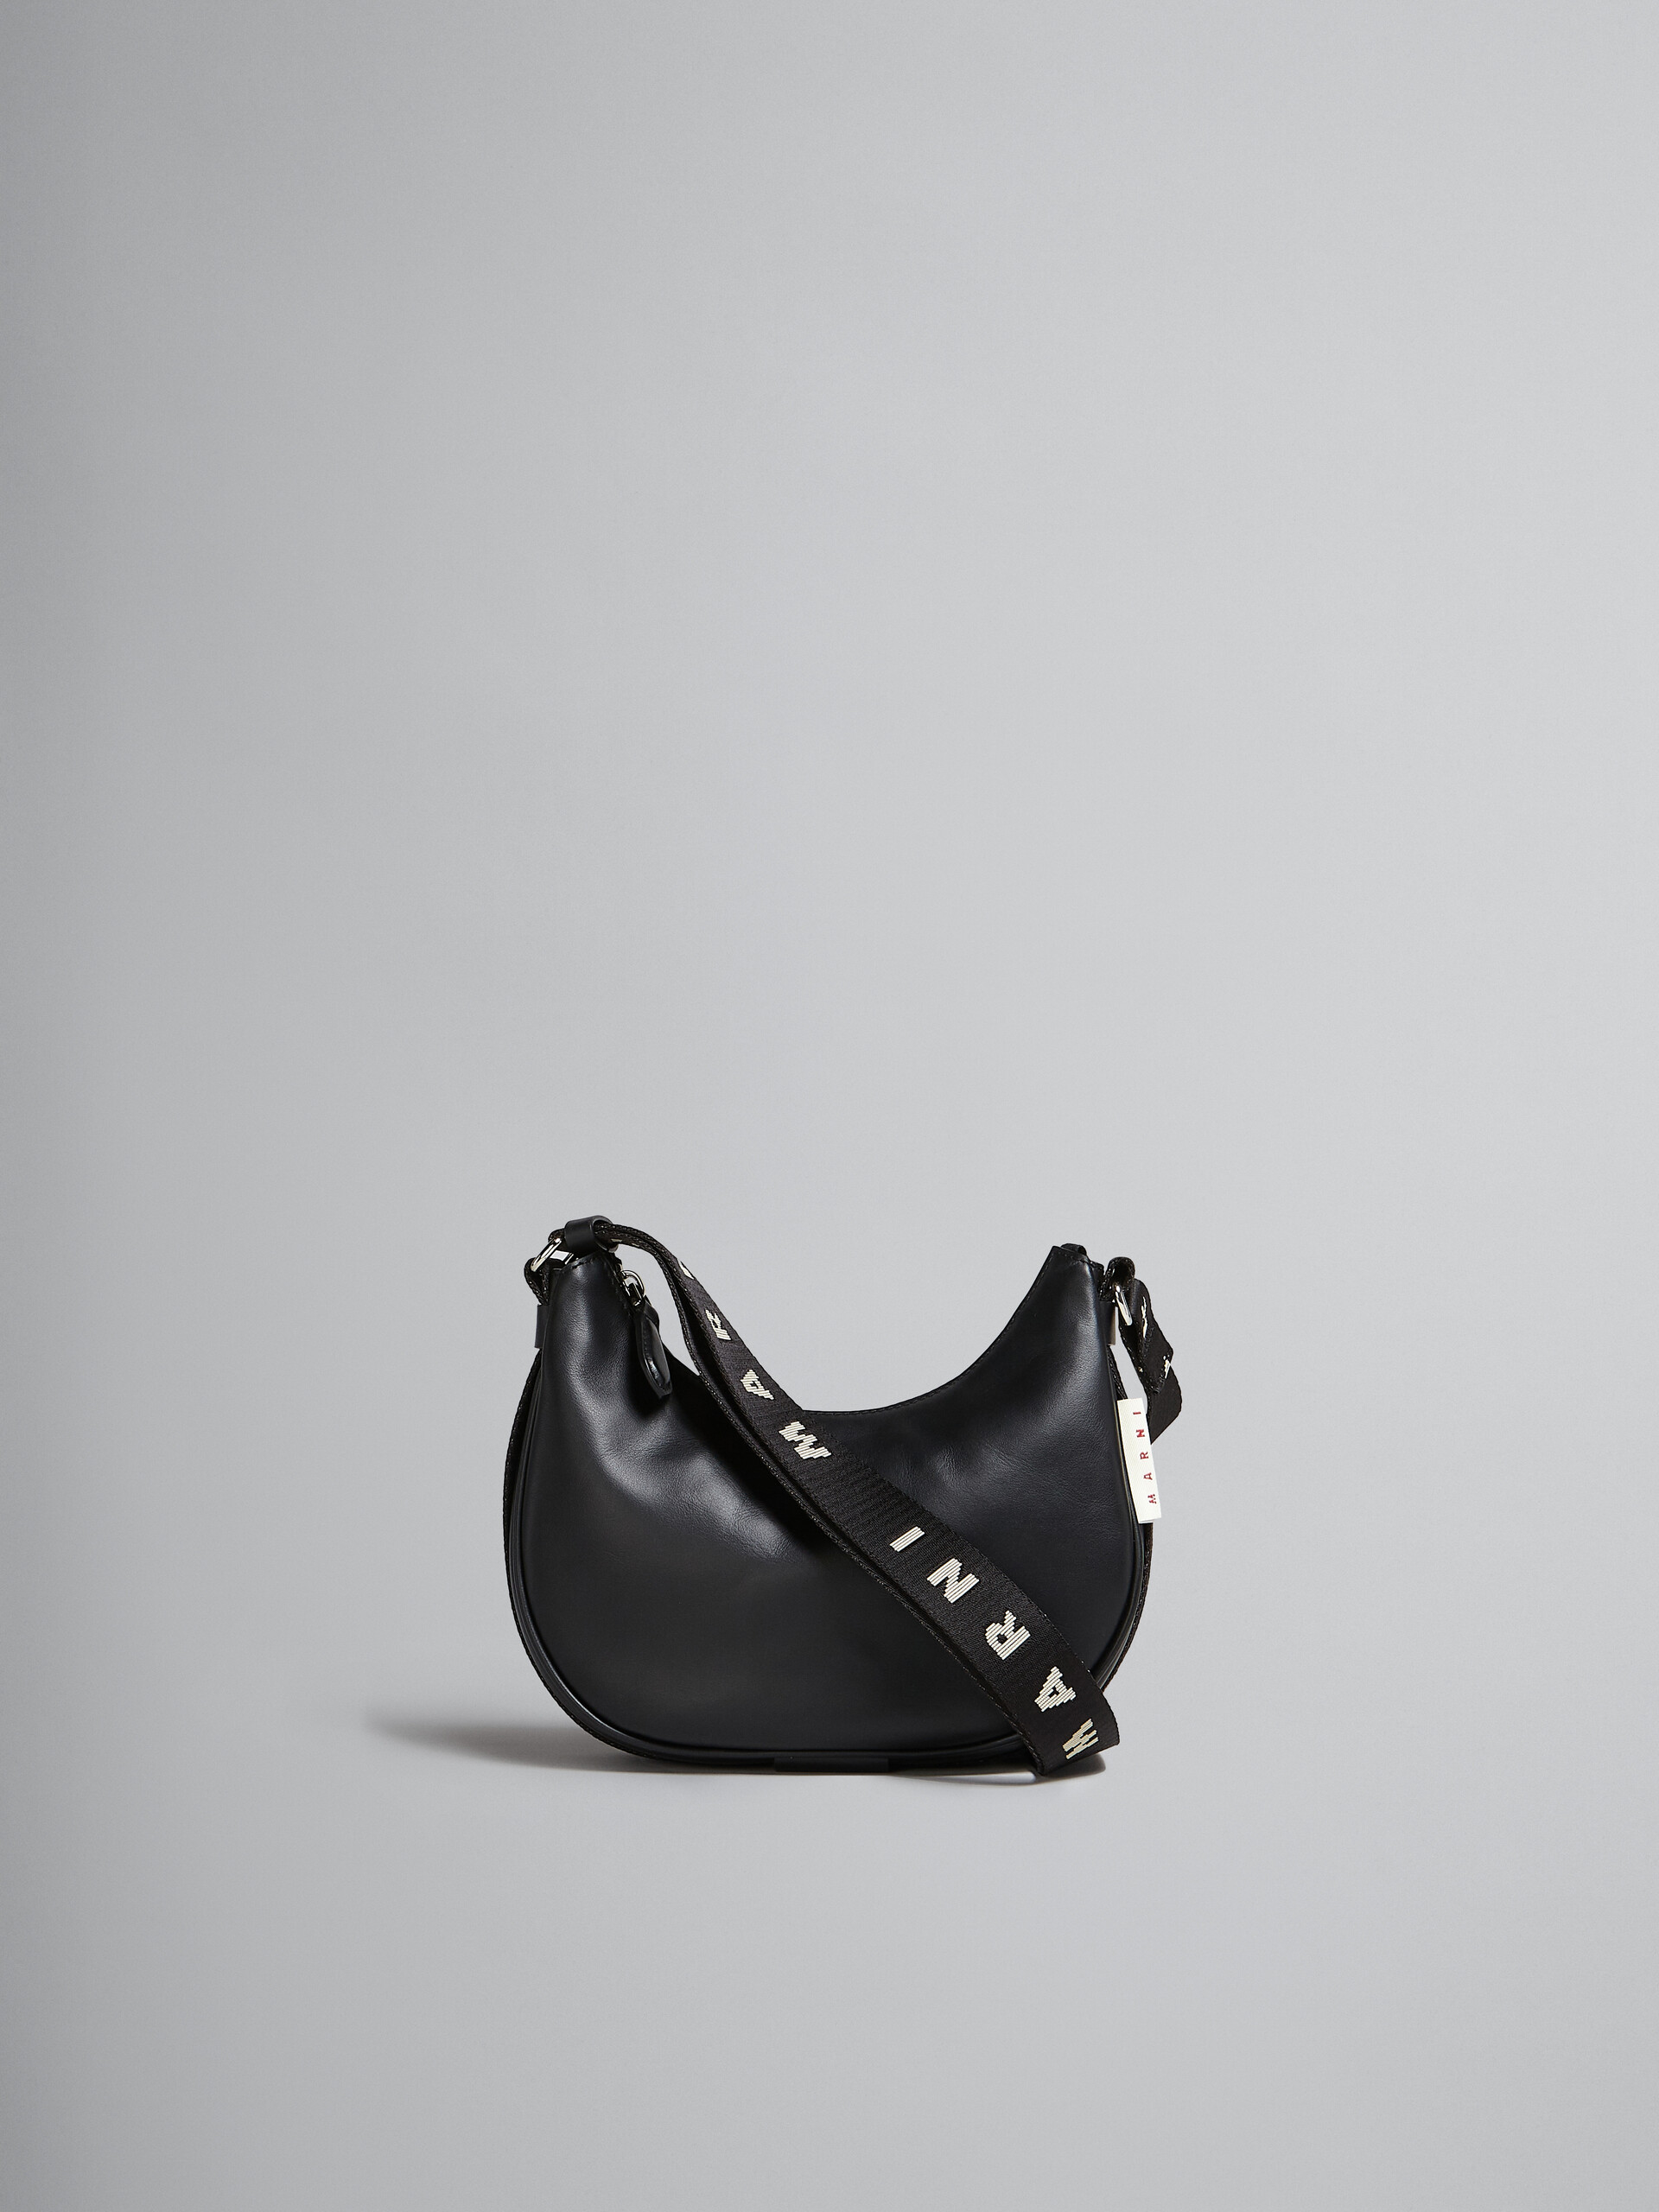 Bey Bag in black leather - Shoulder Bag - Image 1